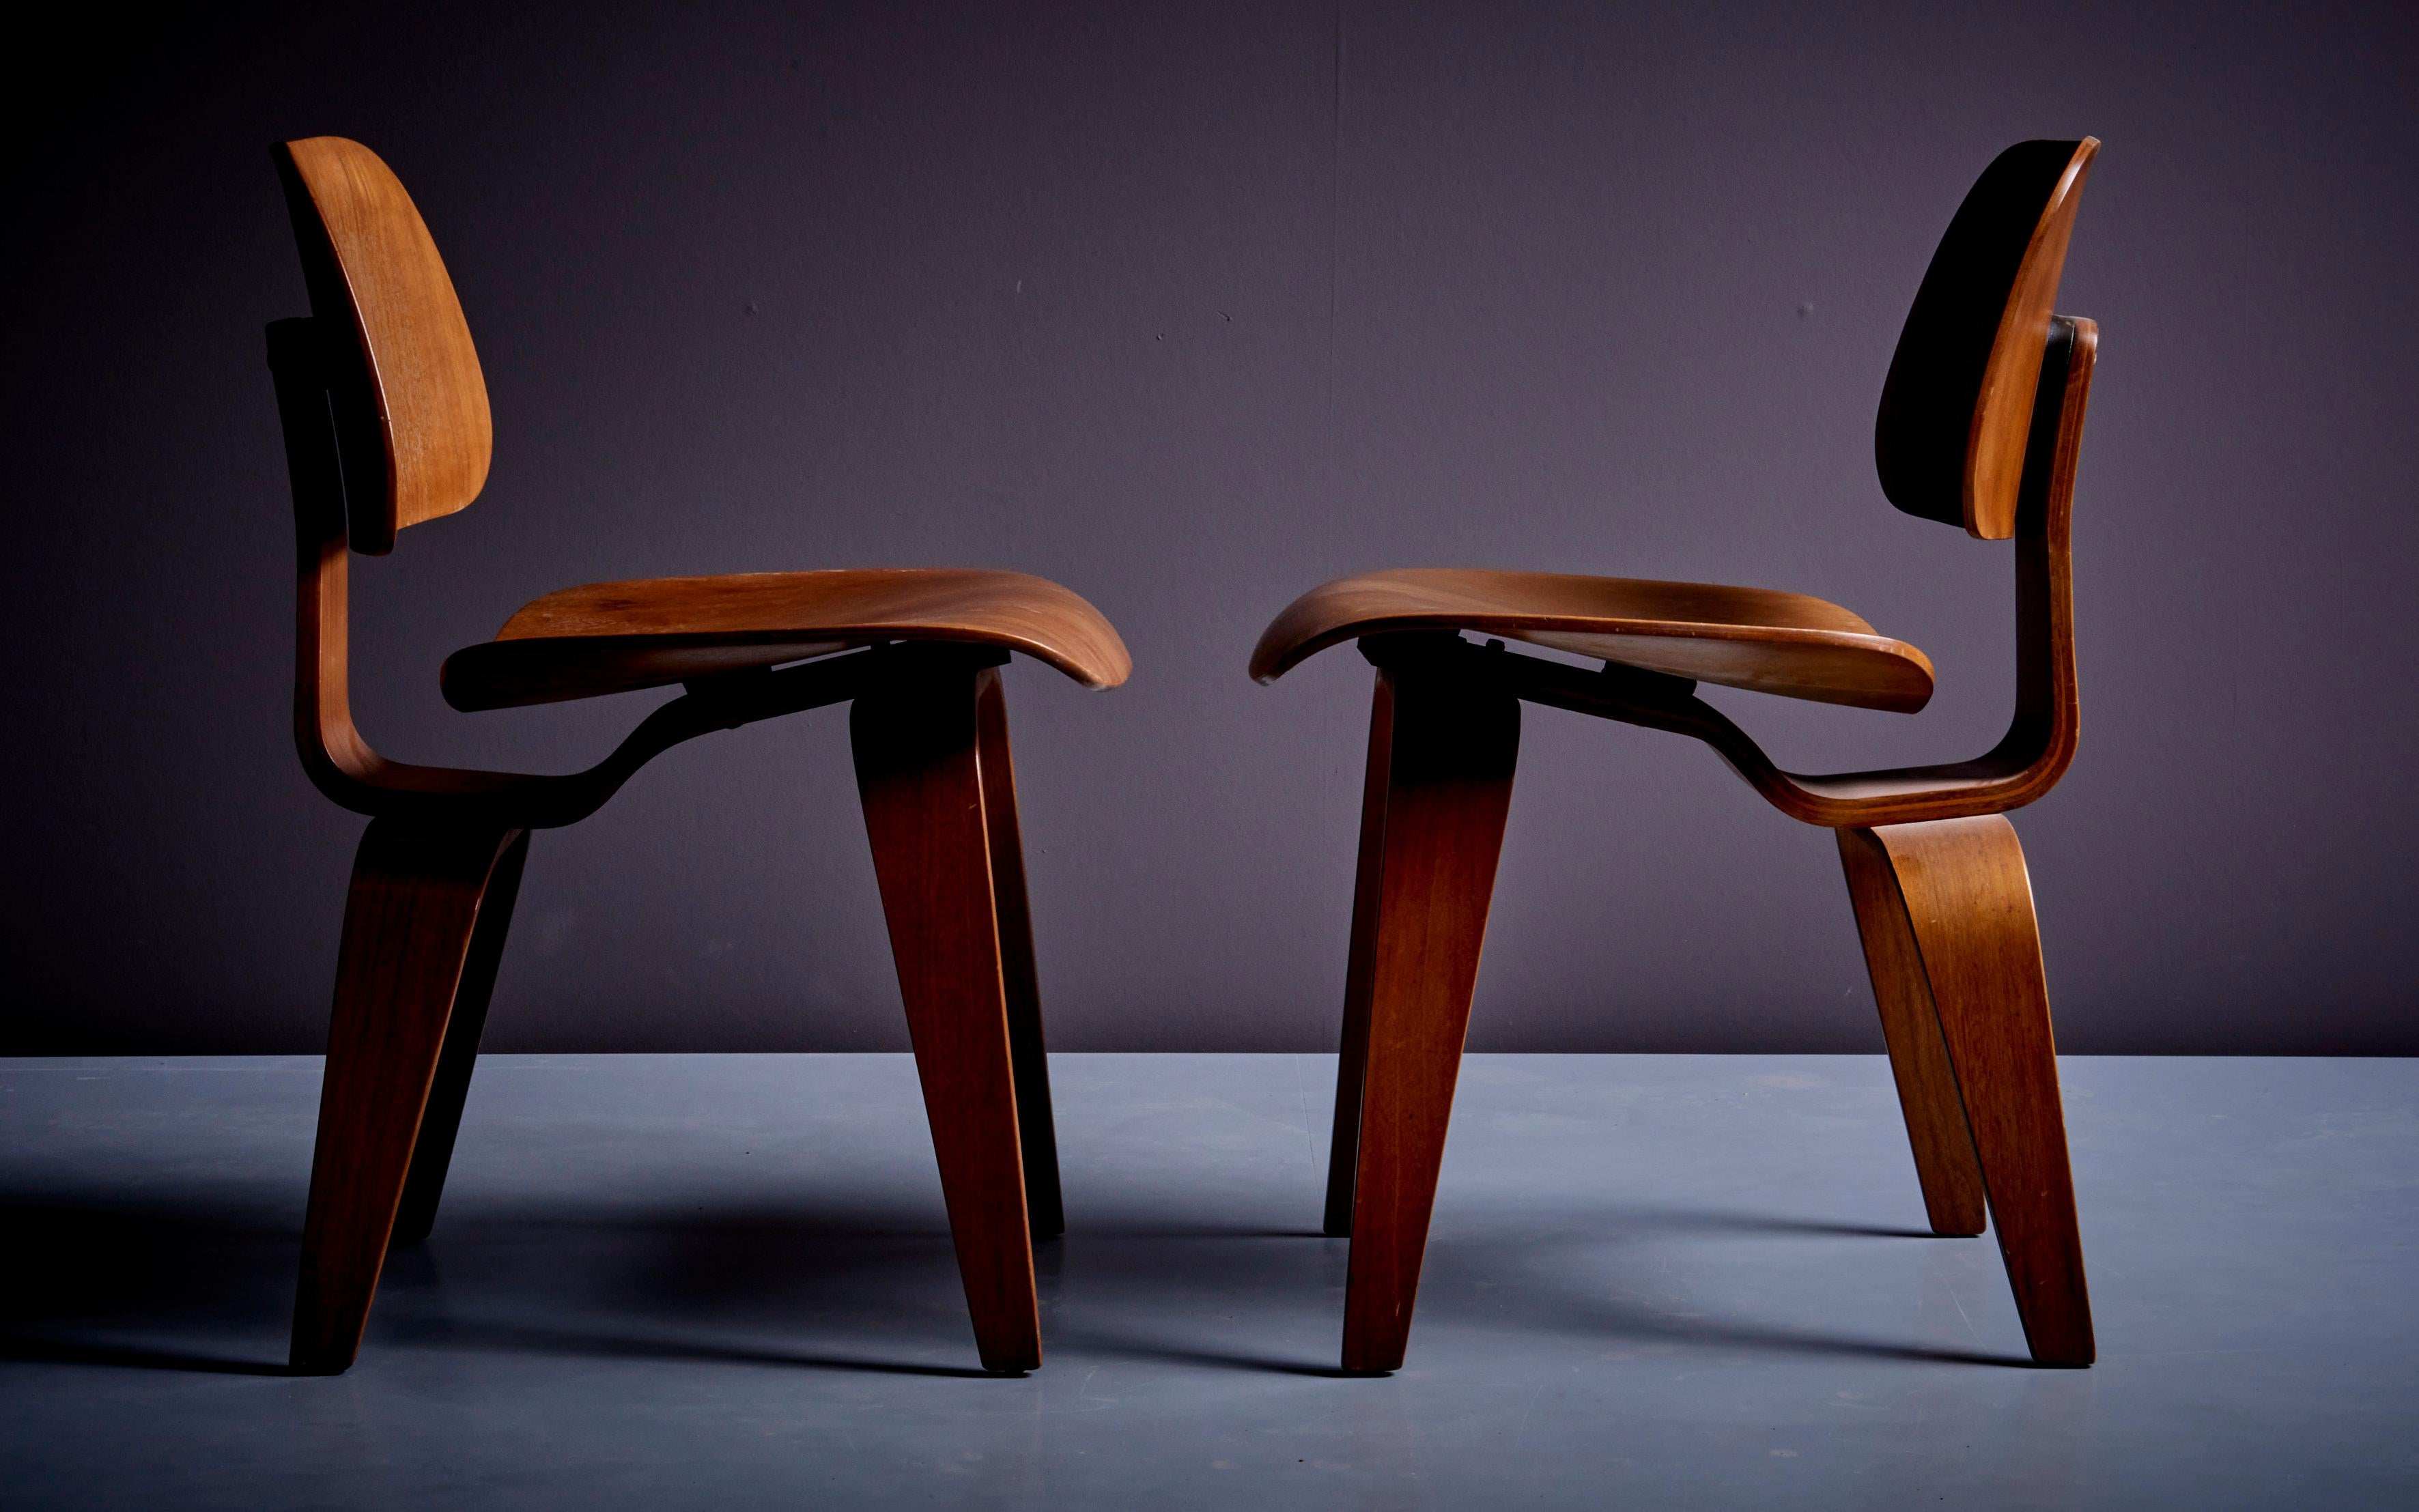 Jeu de deux chaises Eames DCWlounge en noyer pour Herman Miller, USA. La chaise DCW, également connue sous le nom de chaise de salle à manger en bois, est un meuble moderniste créé par l'équipe de designers mari et femme de Charles et Ray Eames en